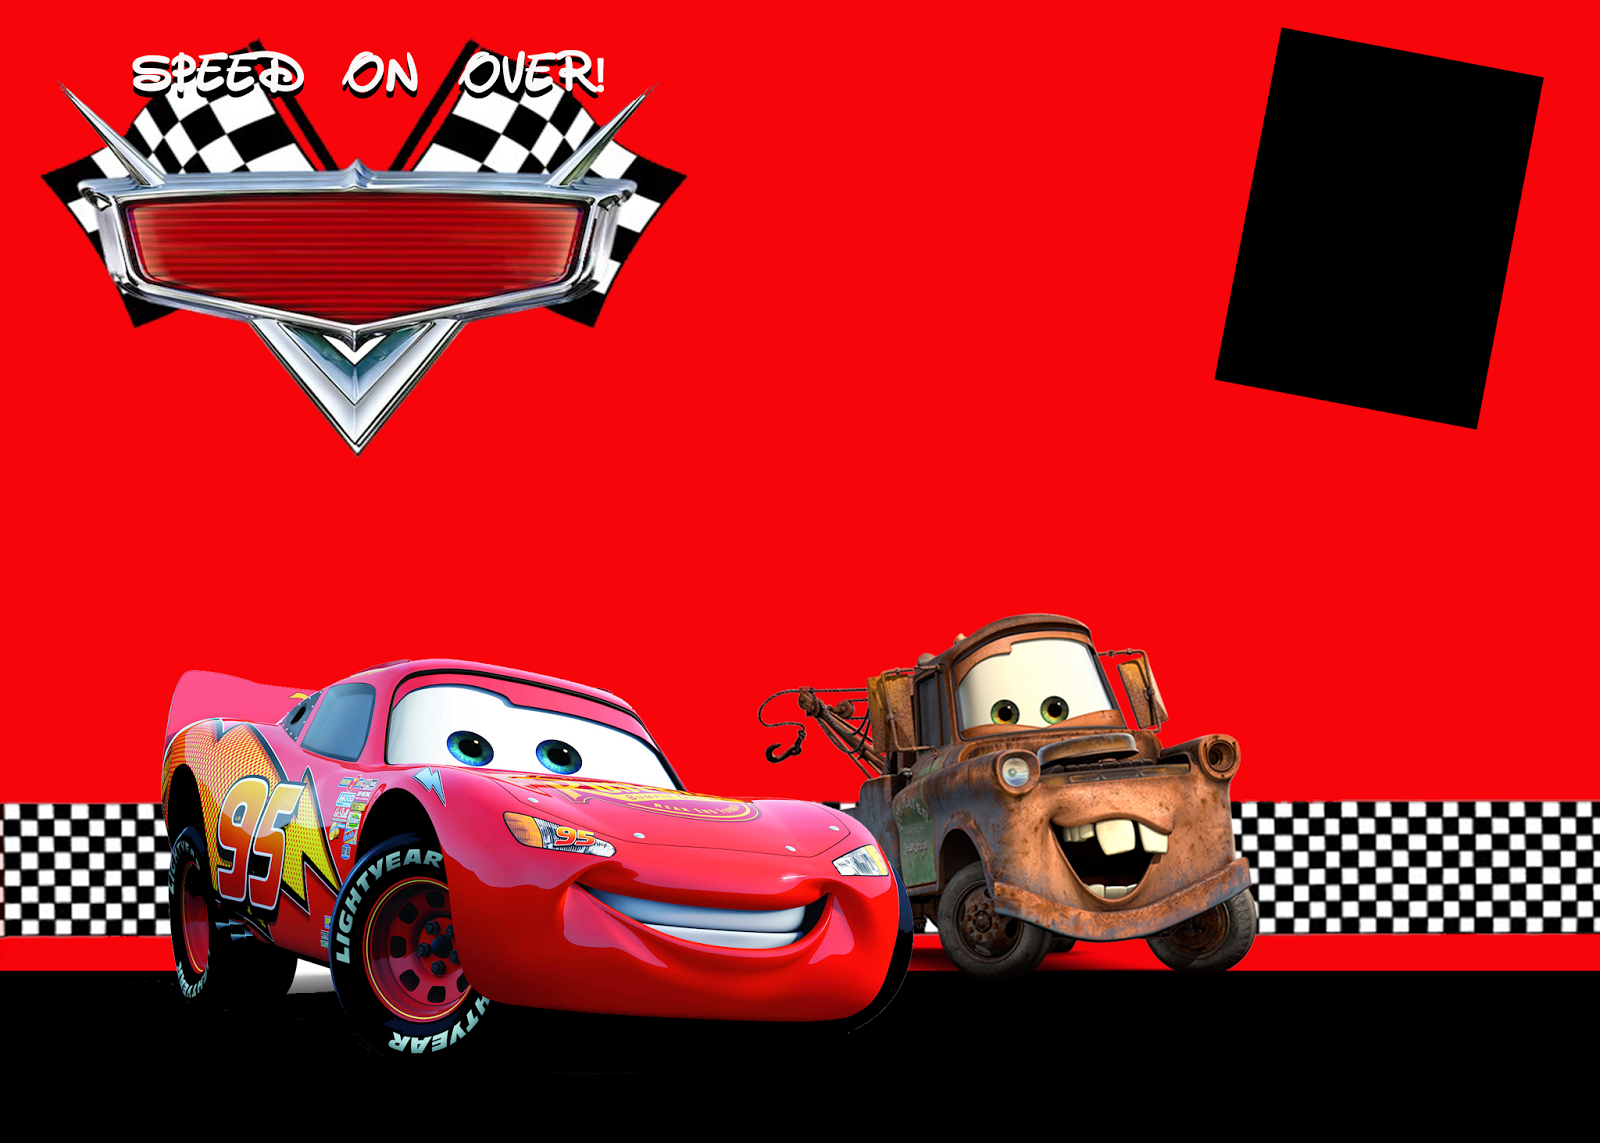 fond d'écran sur le thème de la voiture,rouge,véhicule,dessin animé,voiture,jeux